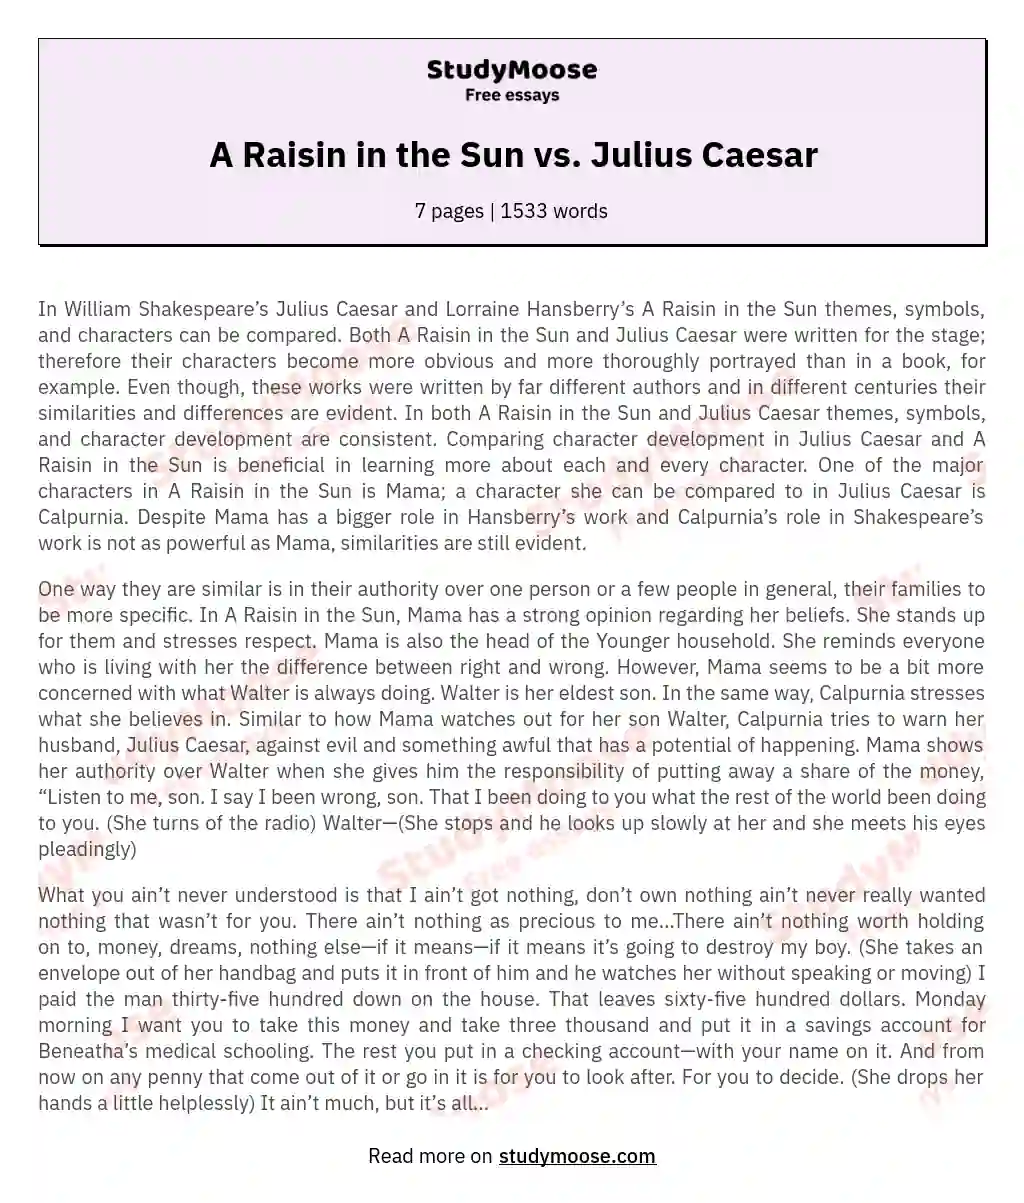 A Raisin in the Sun vs. Julius Caesar essay